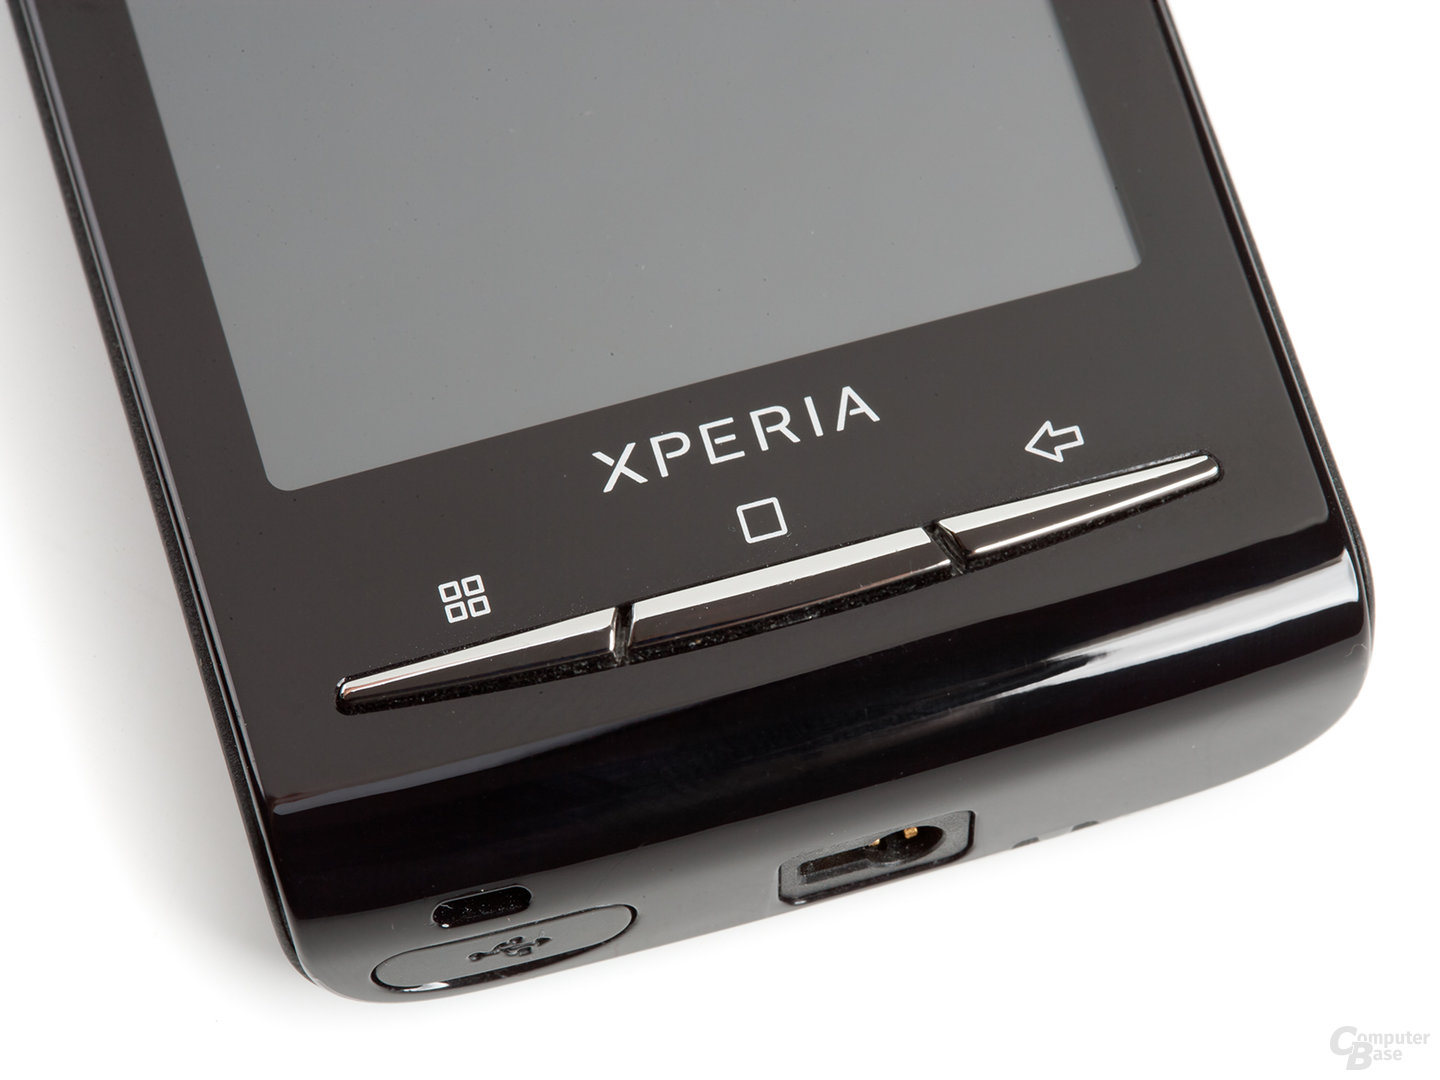 Xperia X10 mini: Tasten